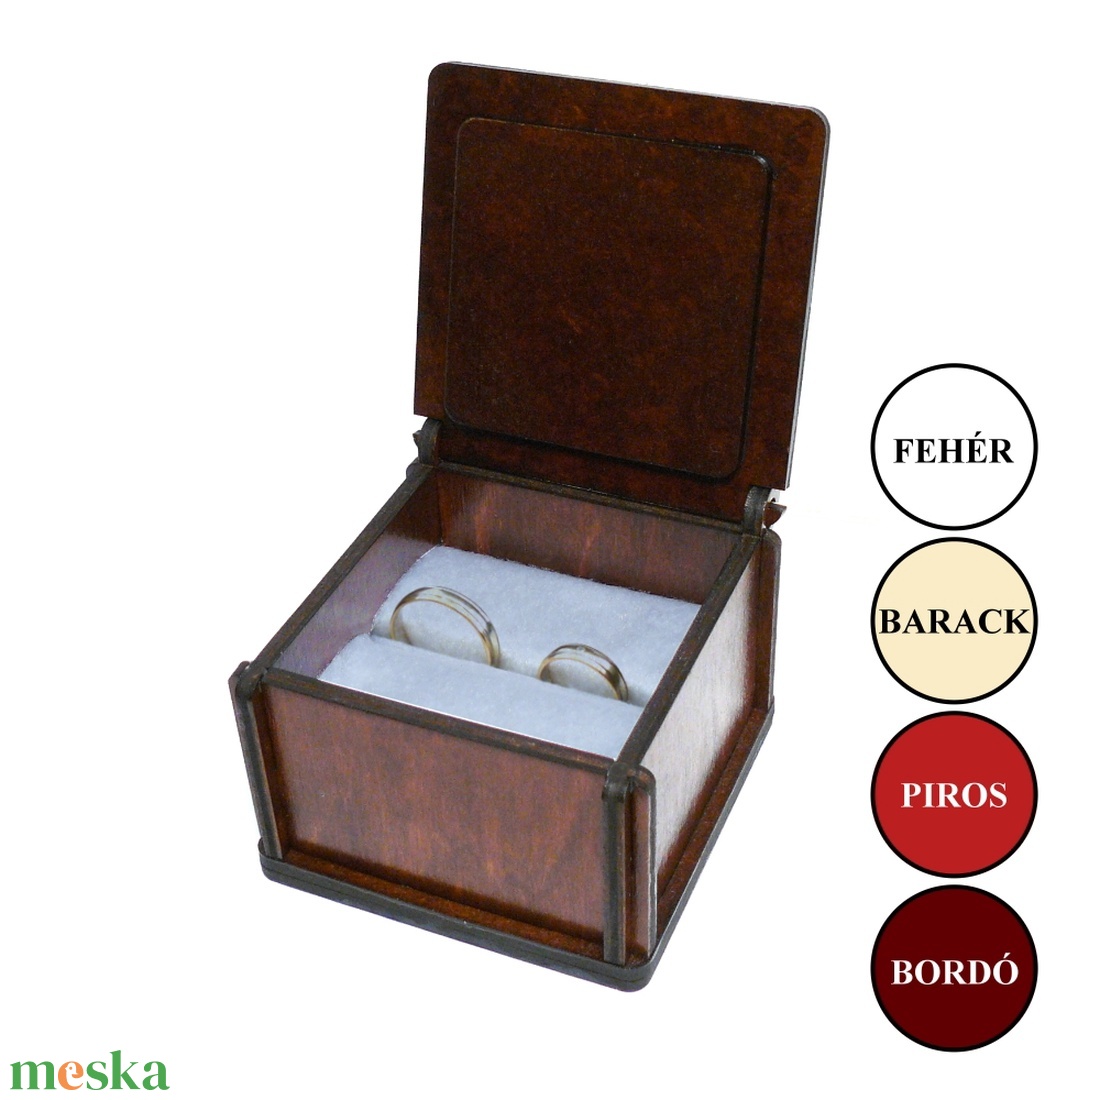 Gyűrűtartó doboz tulipános motívummal #1 - esküvő - kiegészítők - gyűrűtartó & gyűrűpárna - Meska.hu